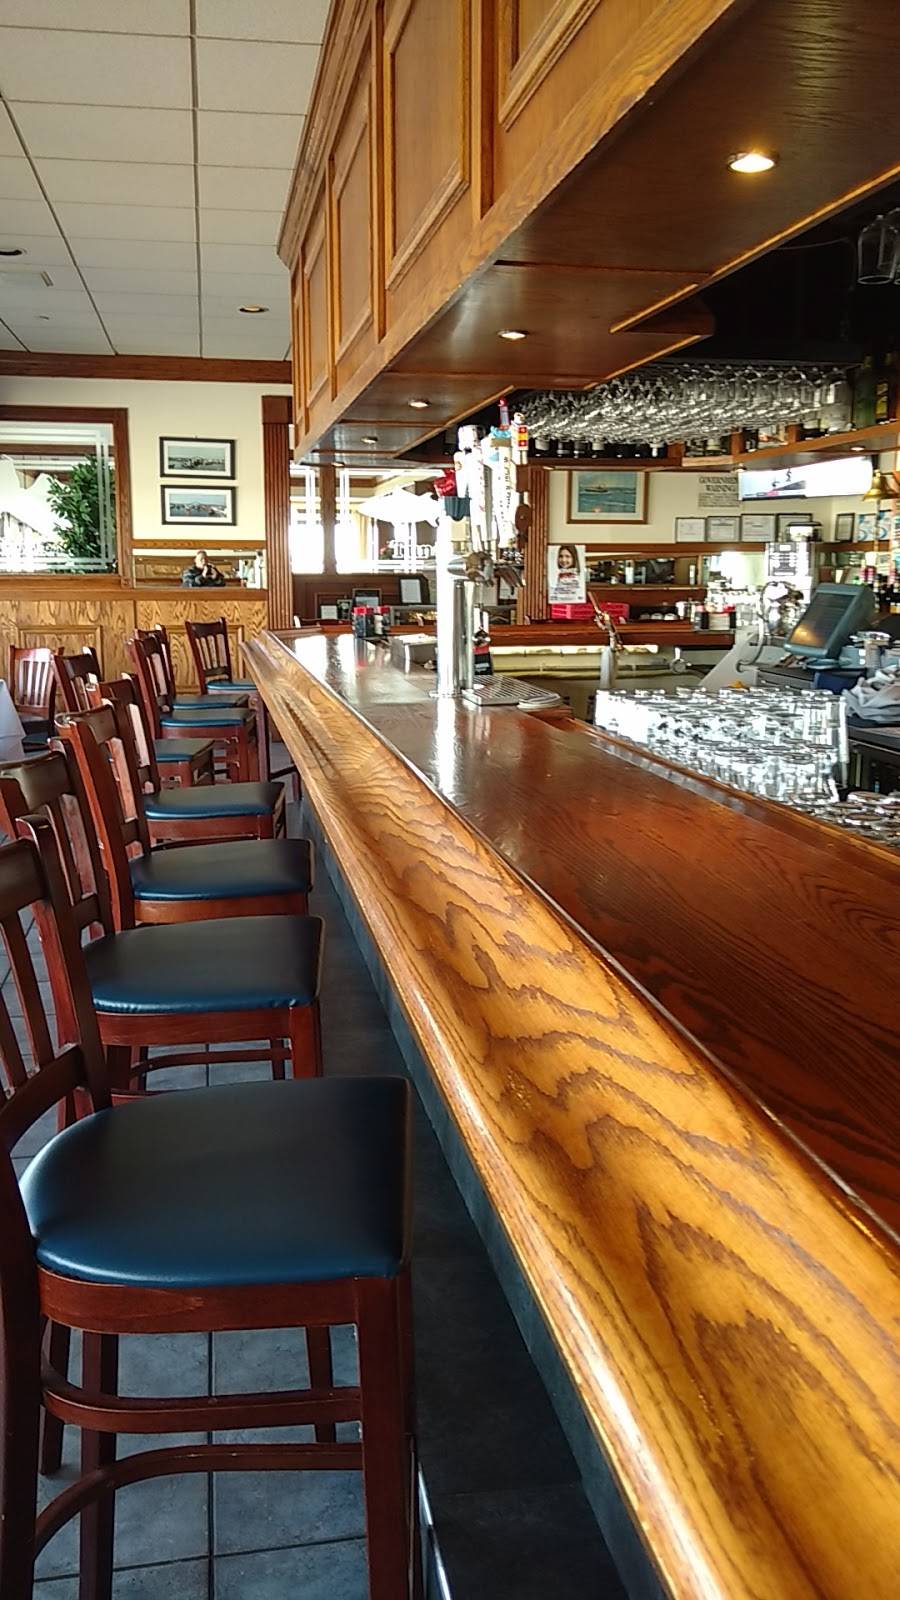 Captain Bills Restaurant & Catering | restaurant | 122 Ocean Ave, Bay Shore, NY 11706, USA | 6316656262 OR +1 631-665-6262